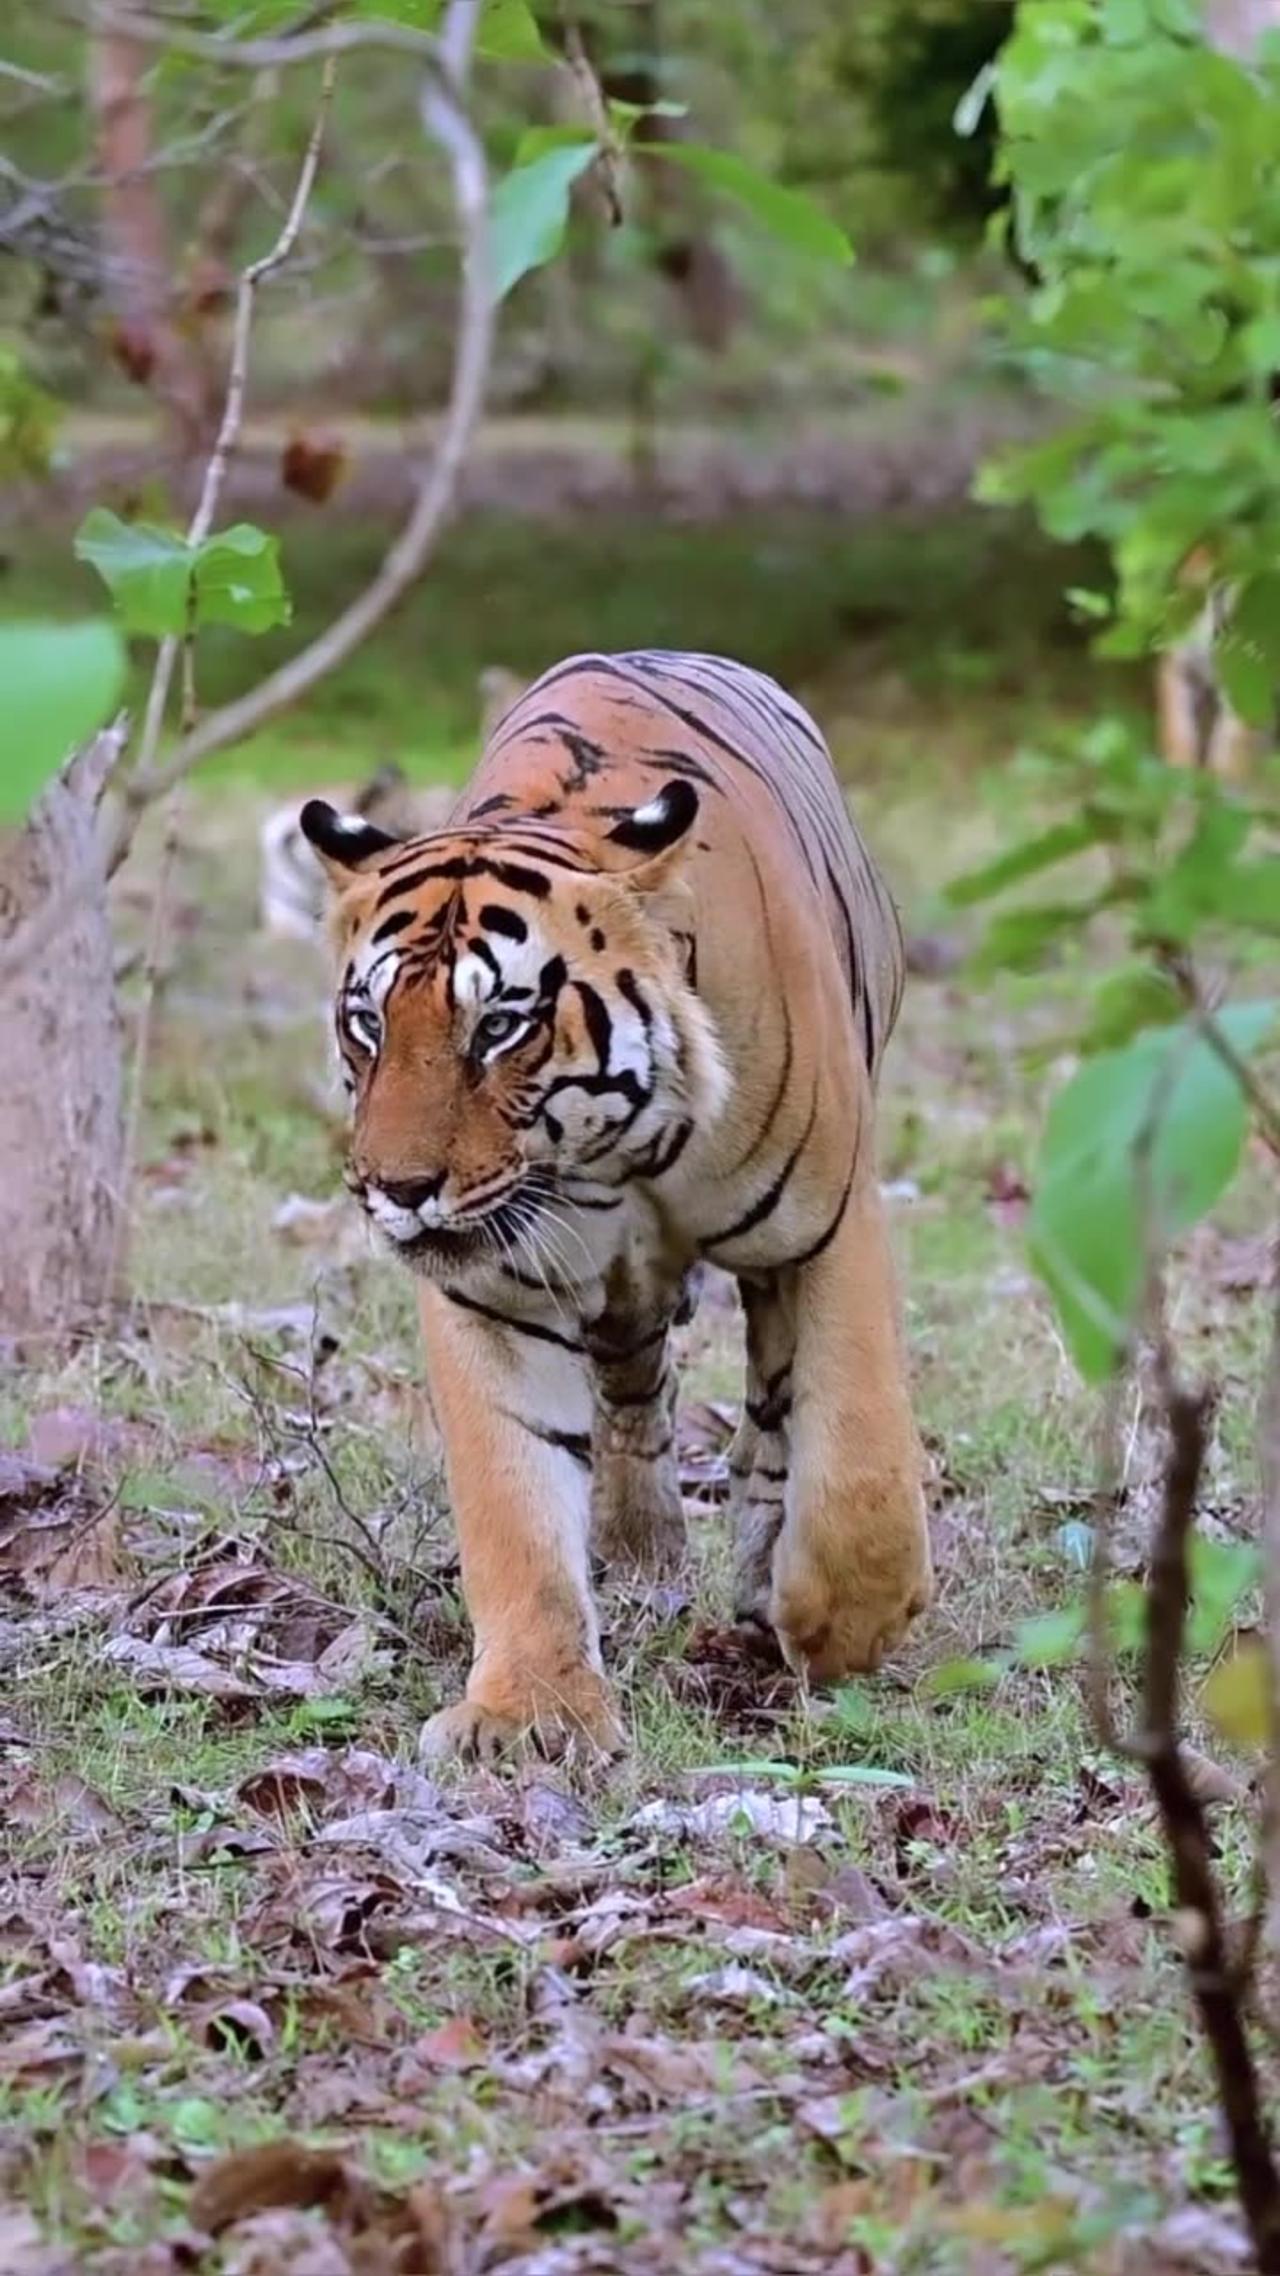 Tiger,